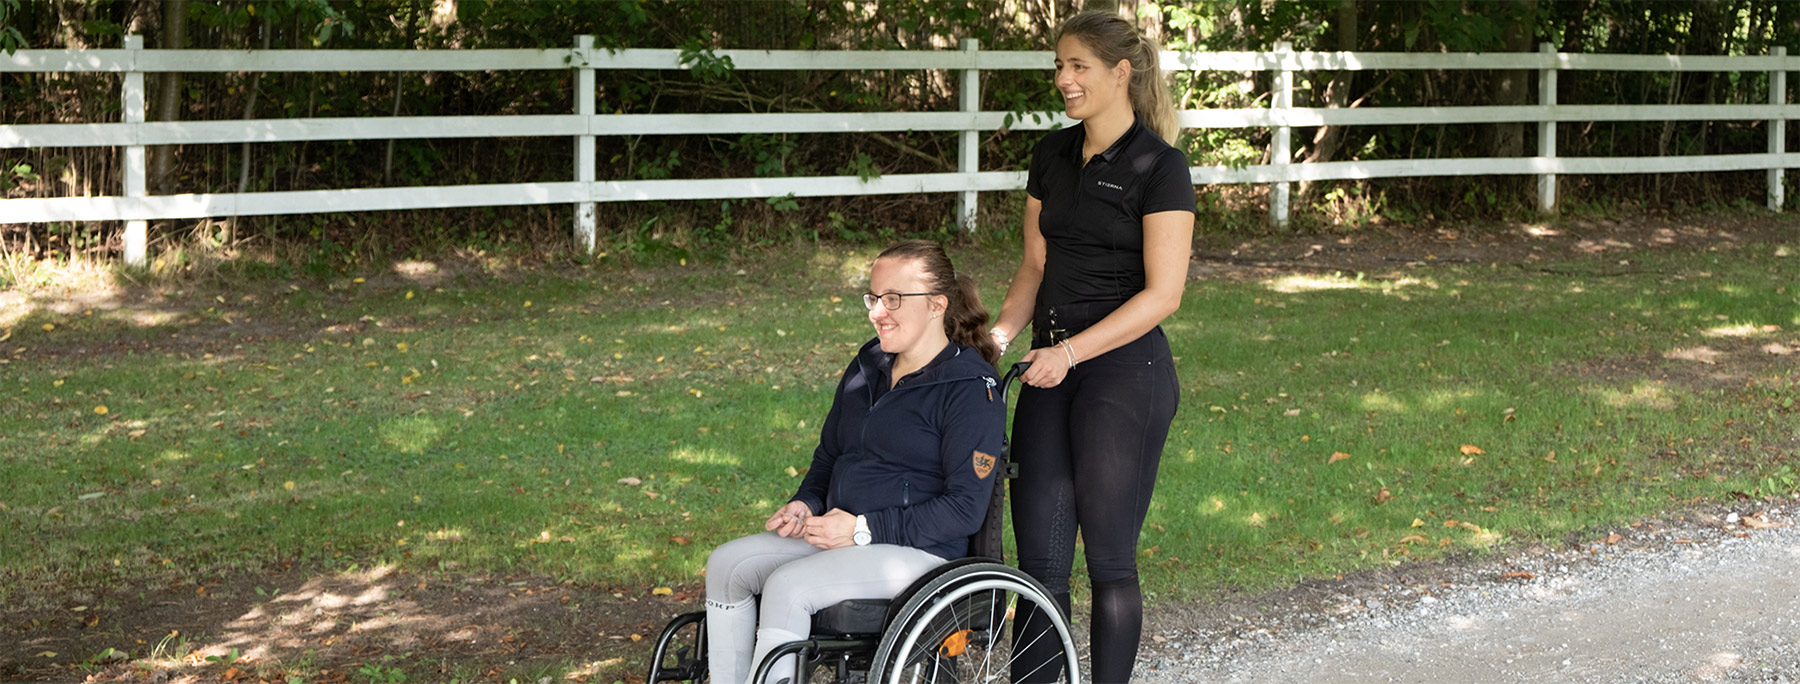 handicaphjælper og pige i kørestol